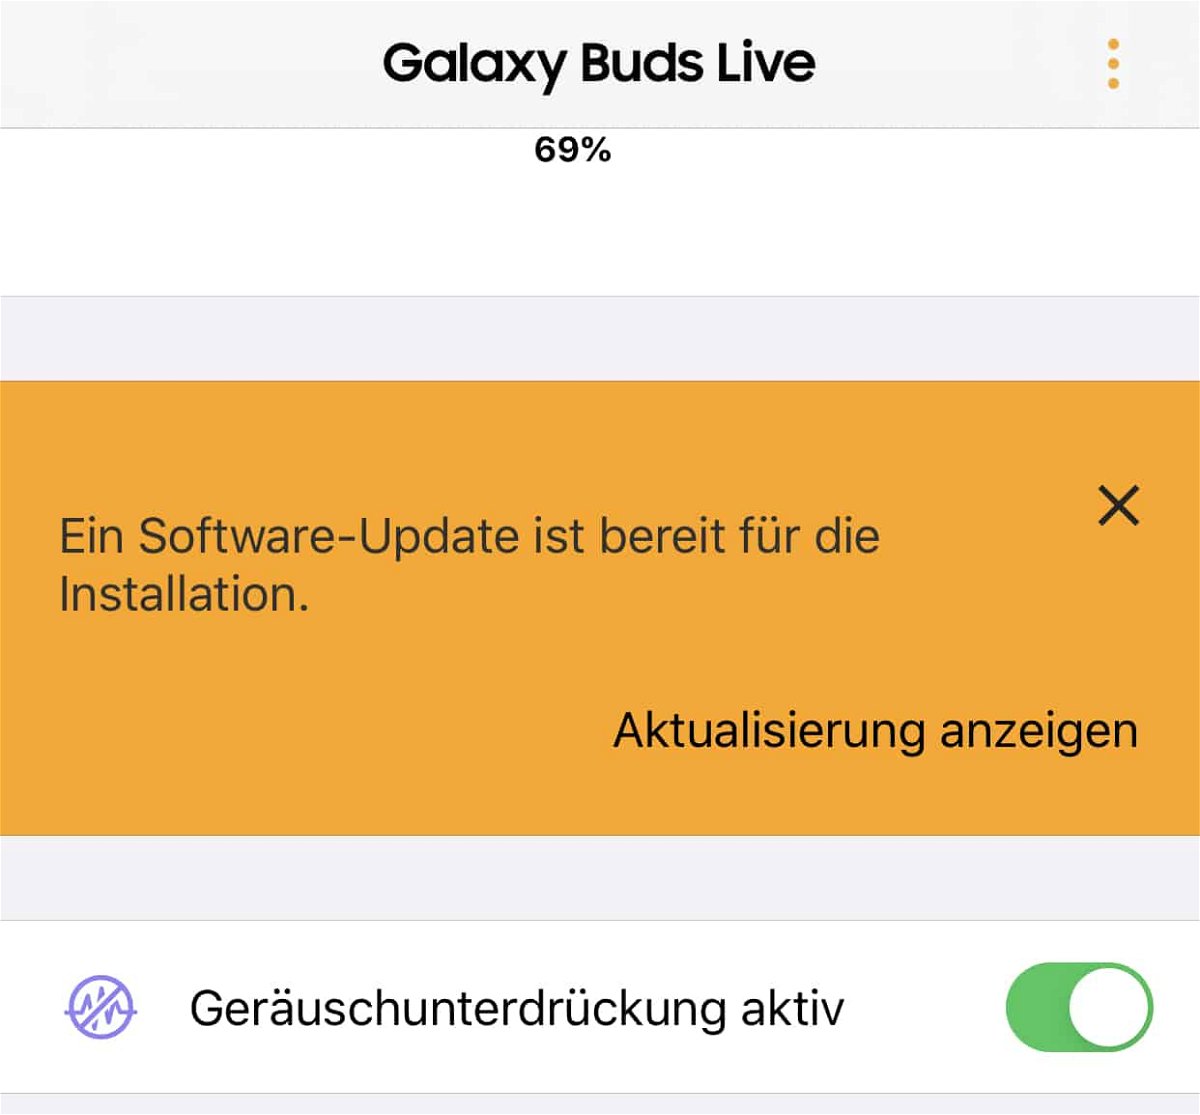 Updates der Samsung Galaxy Buds live durchführen